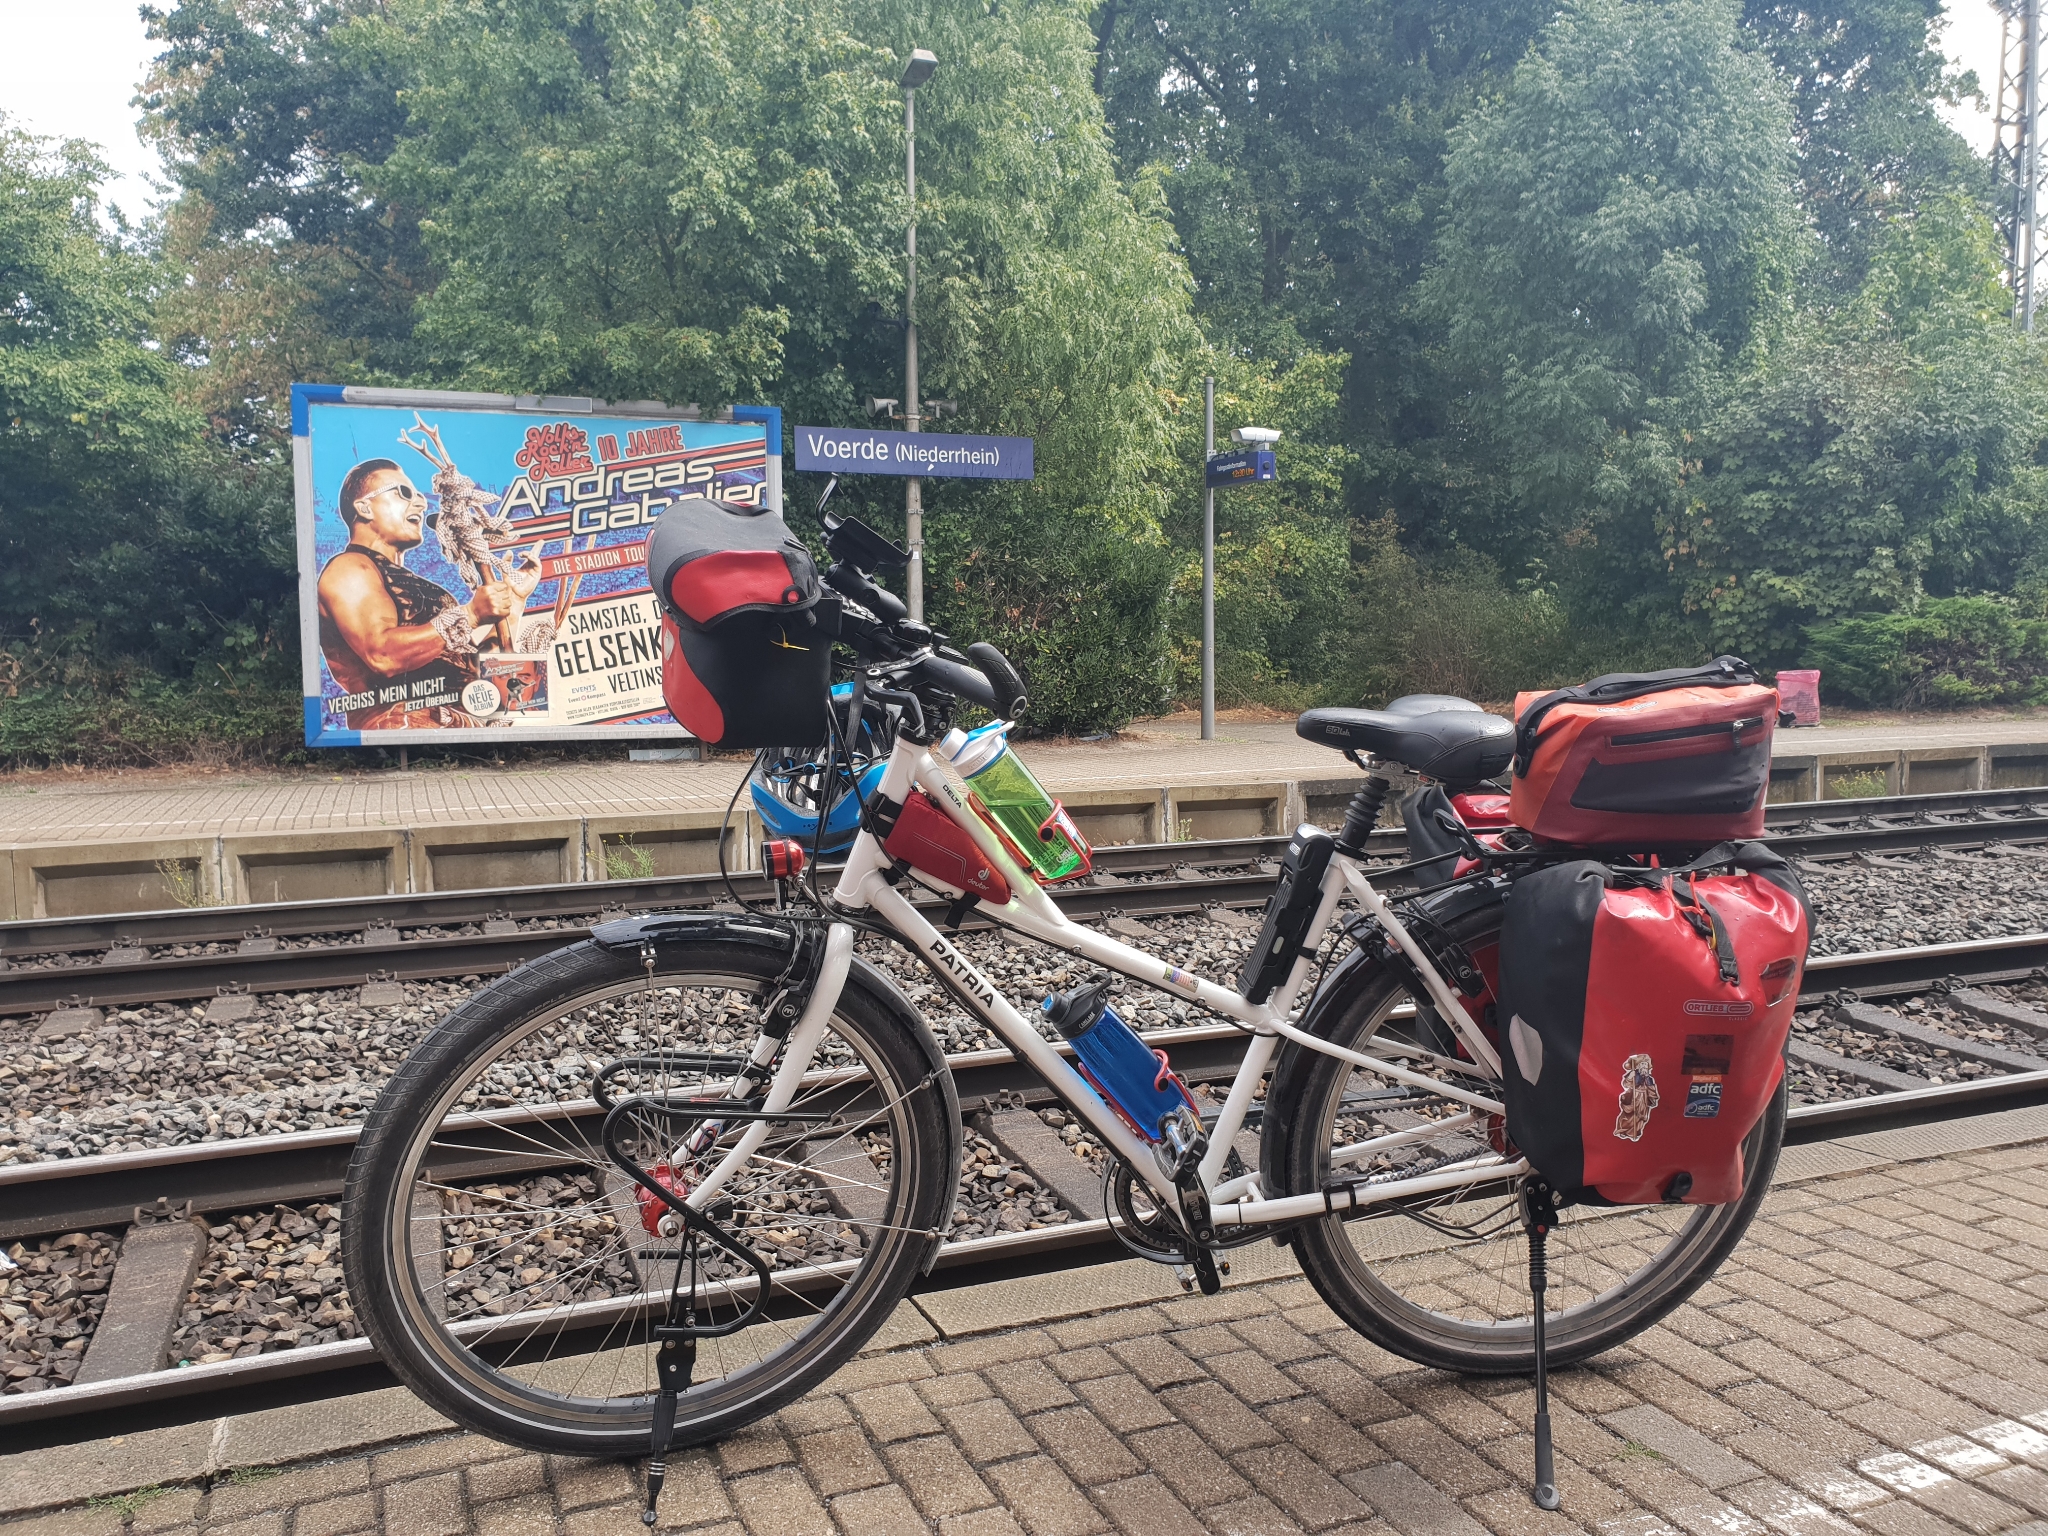 Unser kleines Tor zur großen Welt: Voerde (Niederrhein) Gleich geht's über Duisburg nach Bremen und dann mit dem Rad auf den Weserradweg!